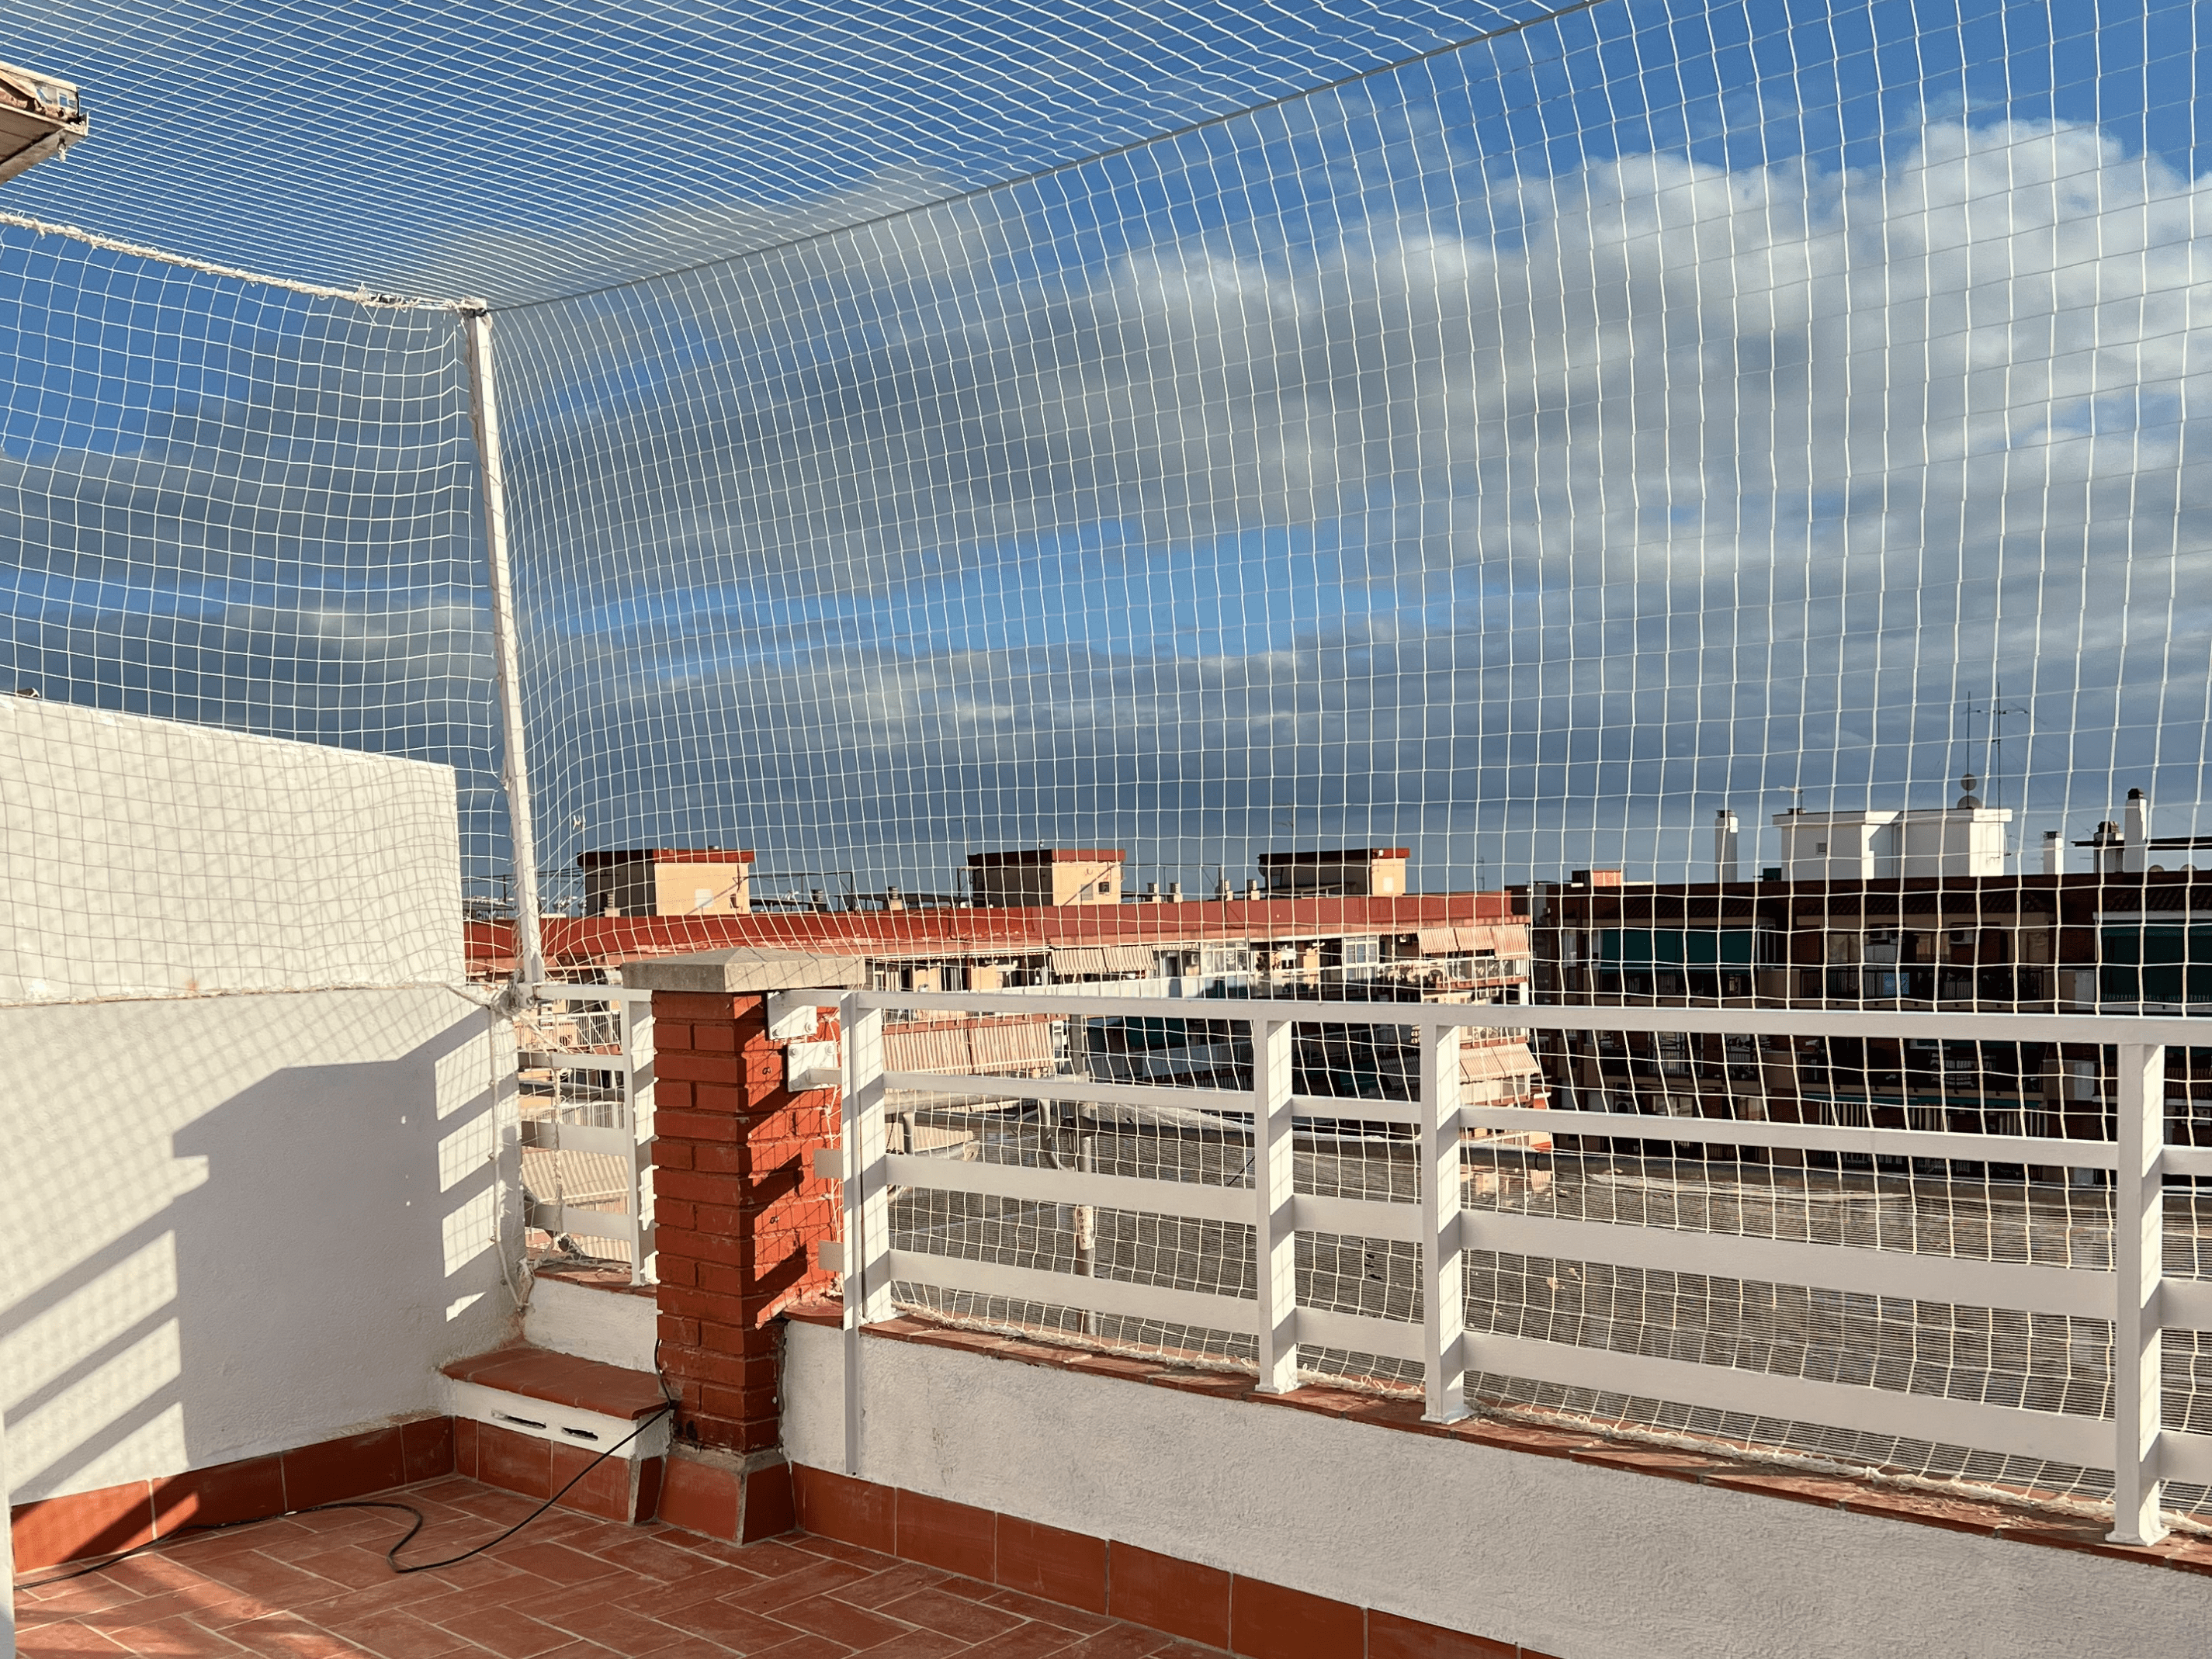  Red de protección para balcón, seguridad infantil